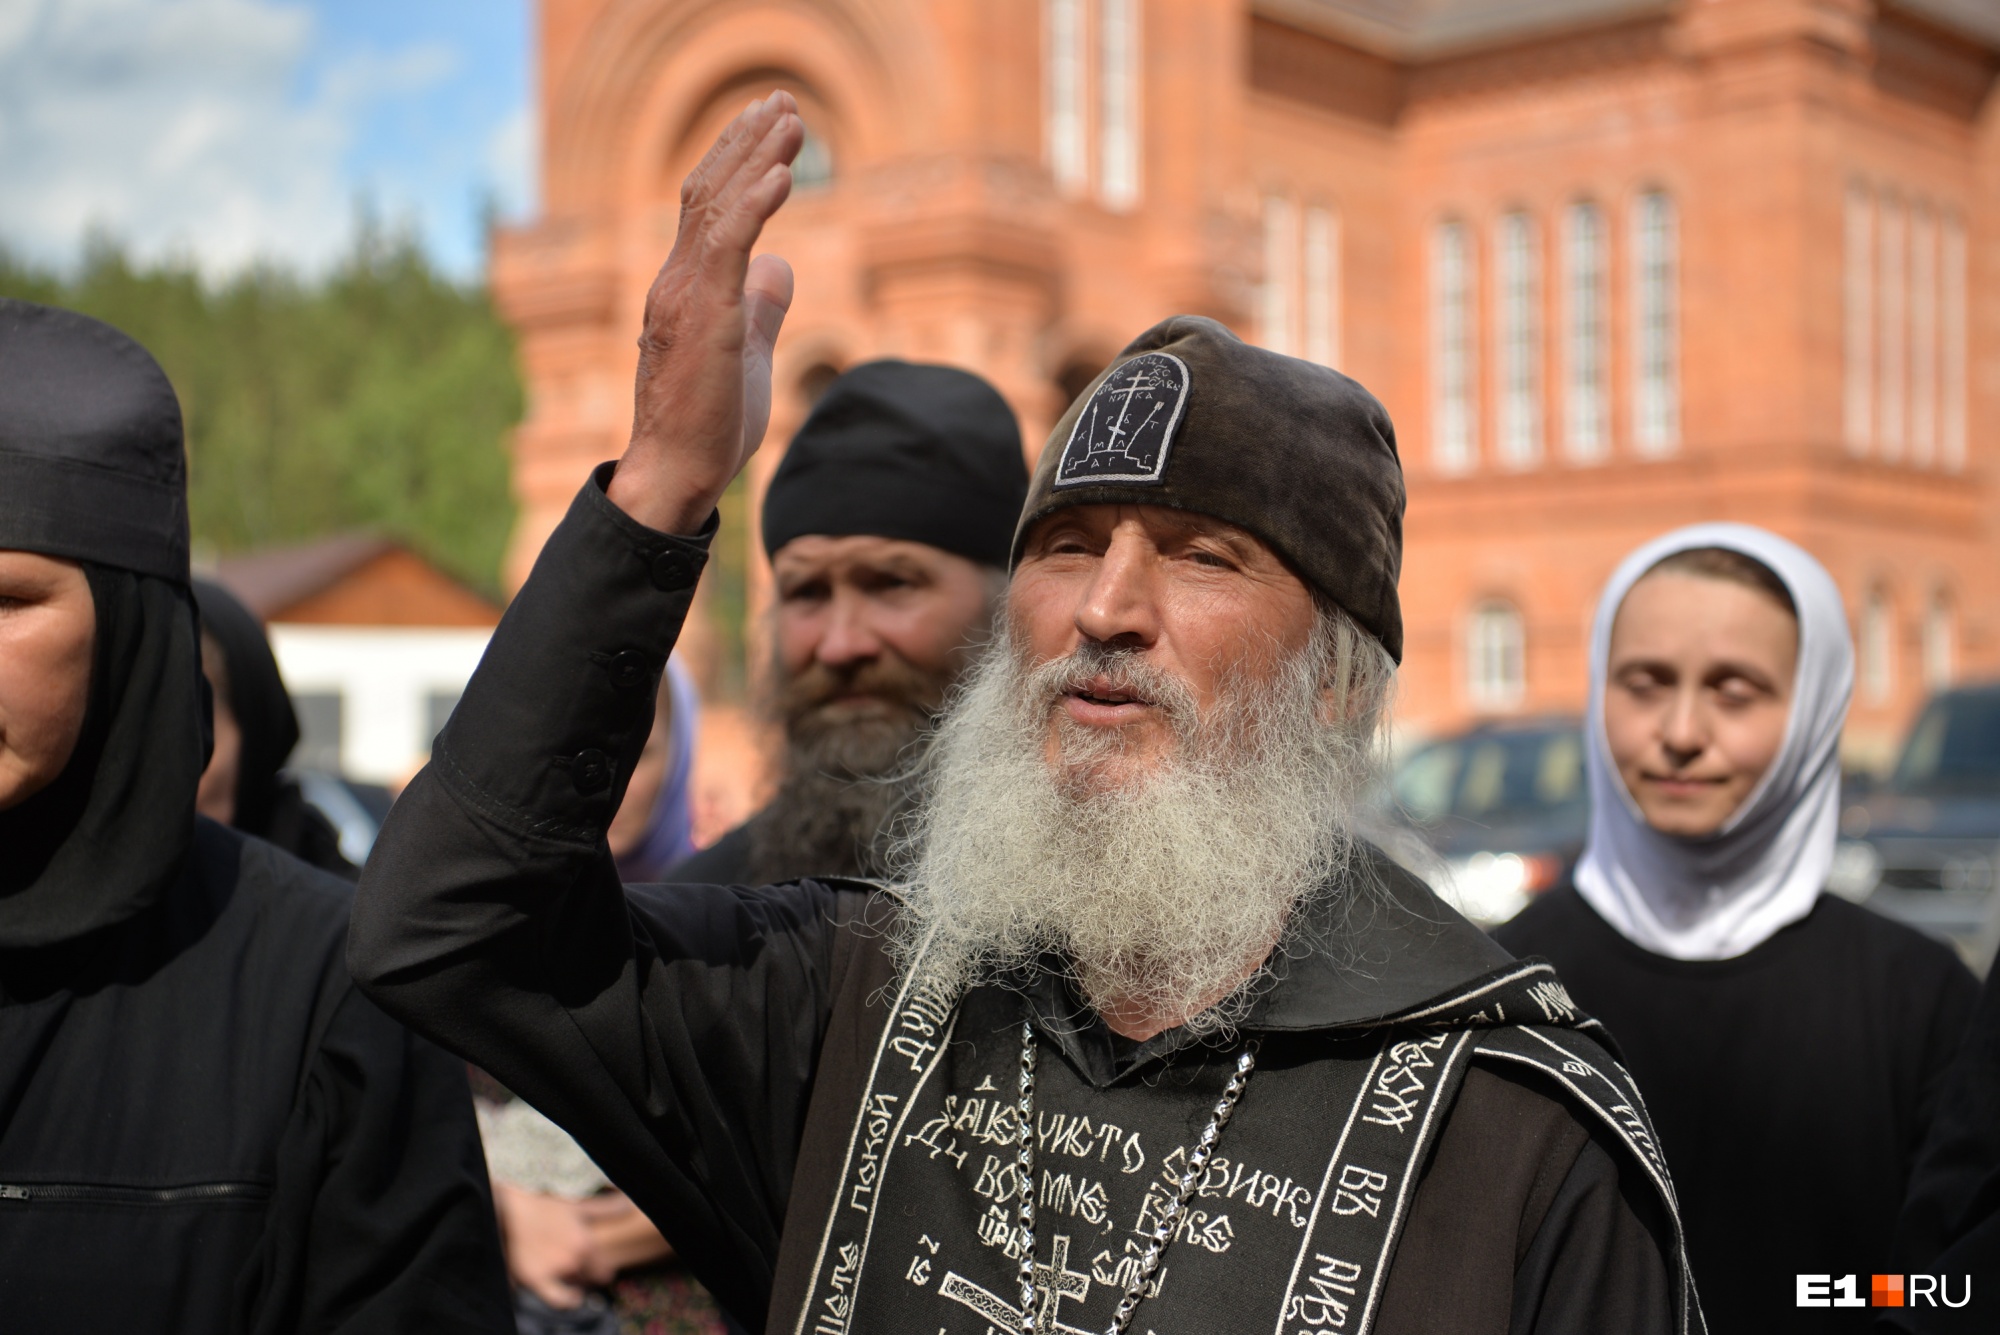 Скандального схимонаха Сергия будут судить за разжигание ненависти и унижение людей